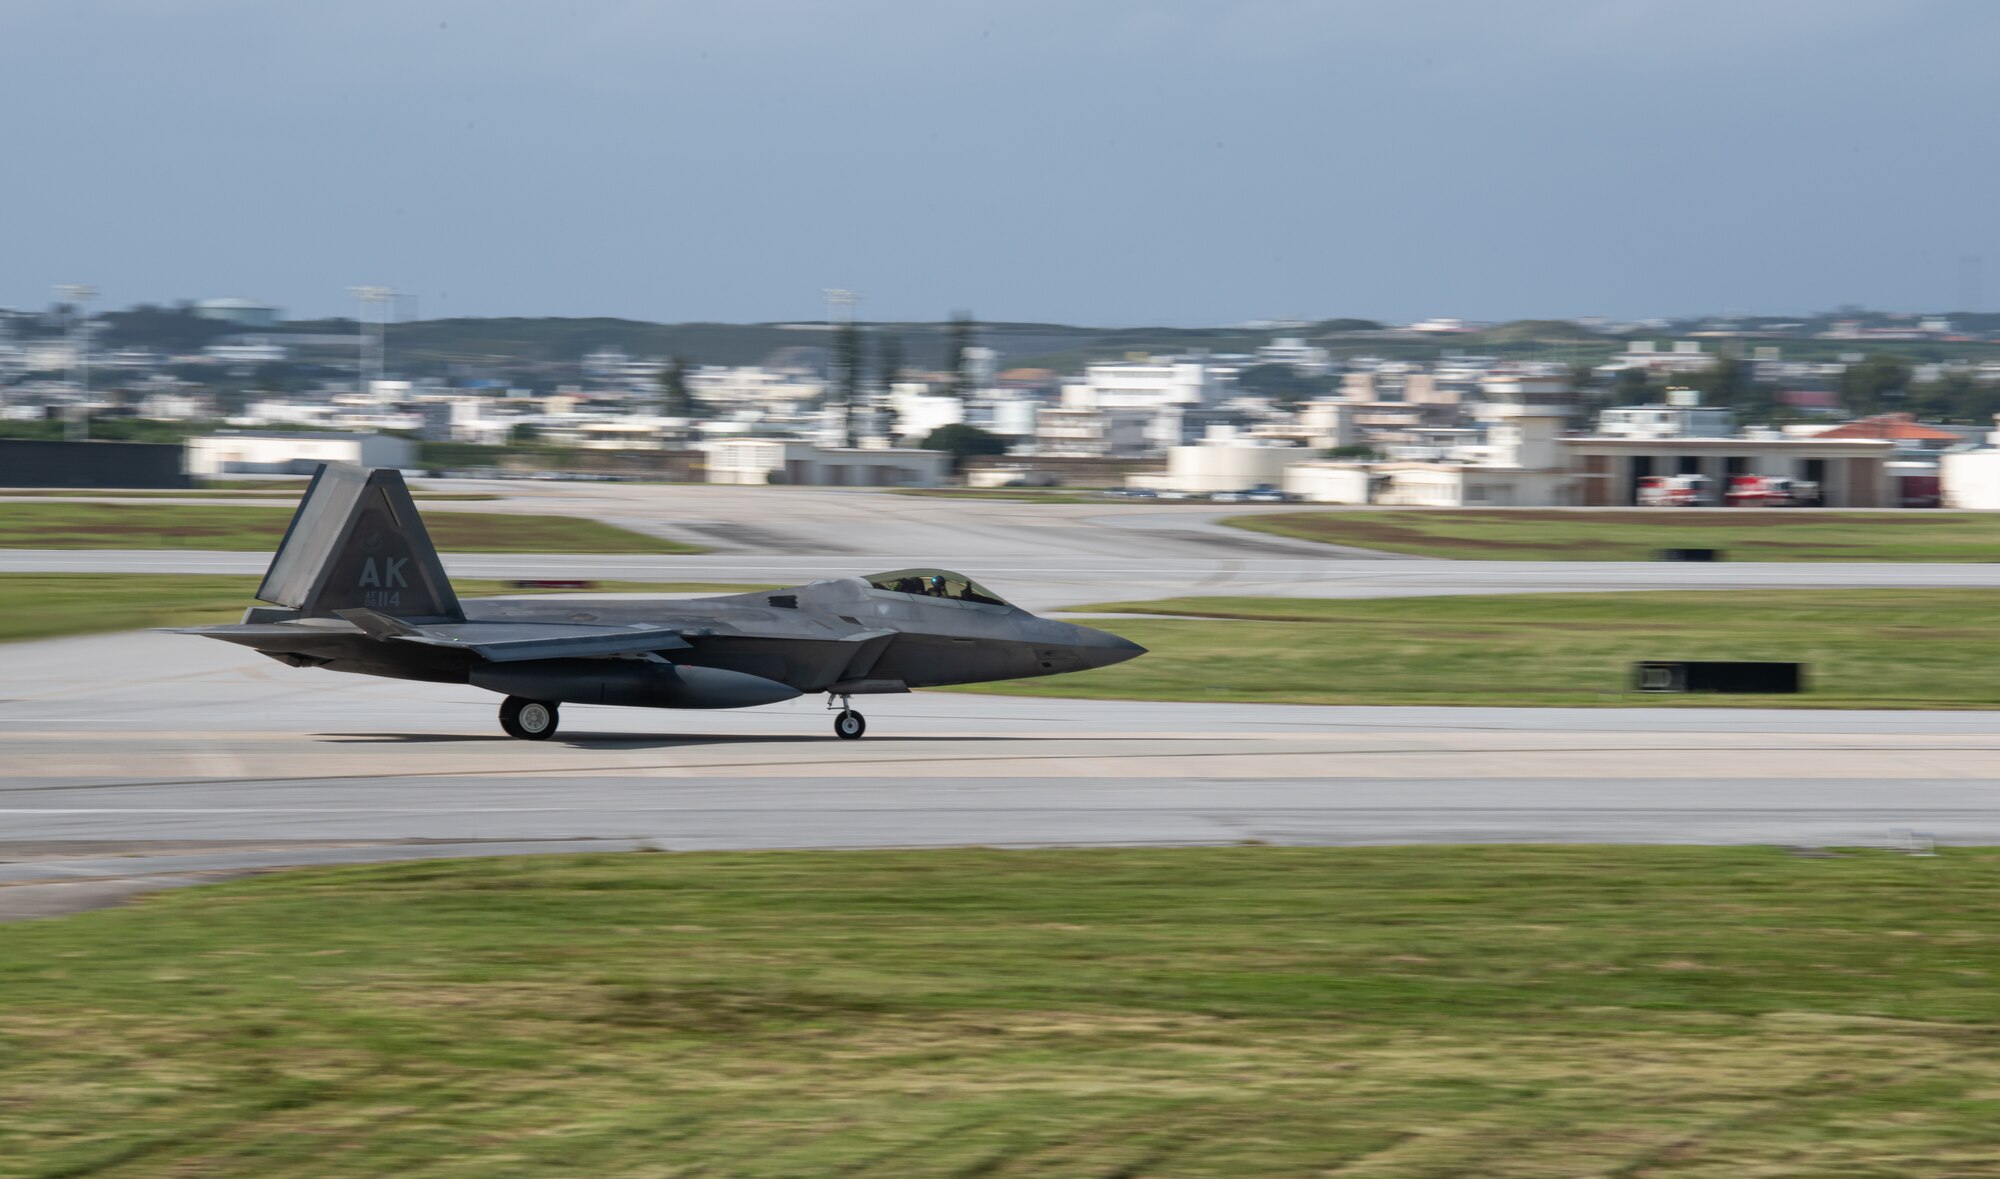 An F-22 Raptor lands on a runway.